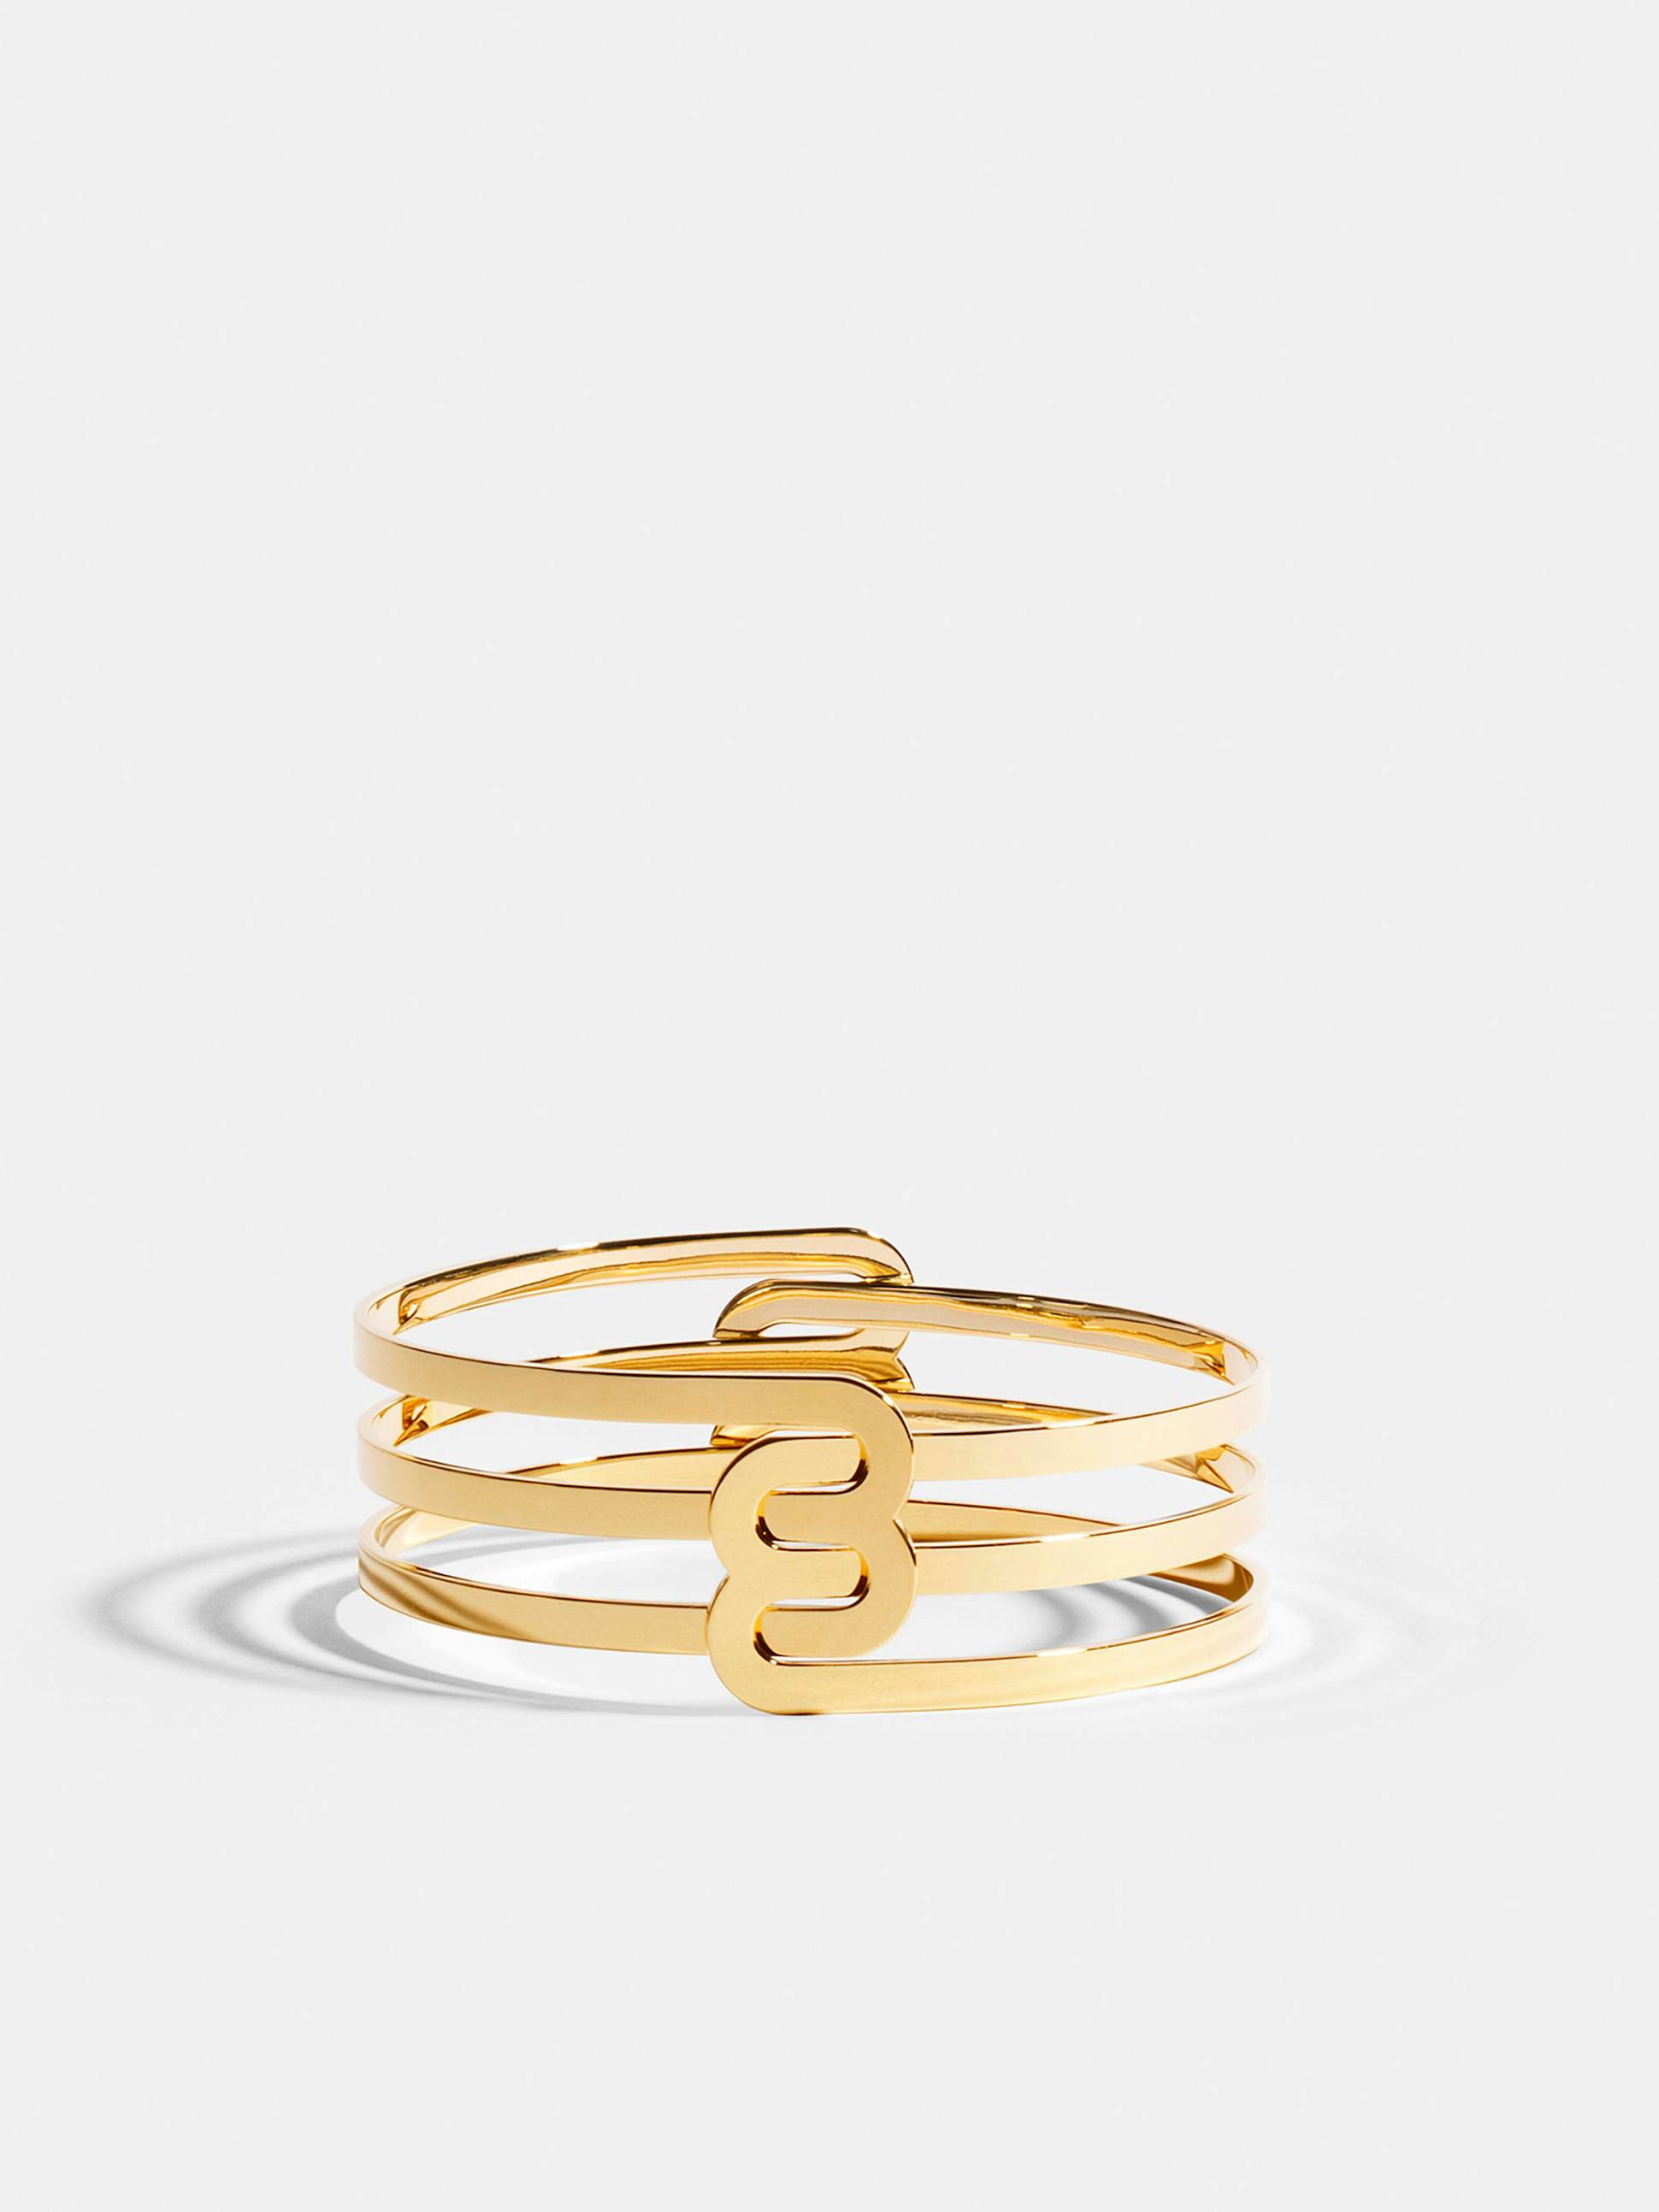 Bracelet Étreintes en Or jaune éthique 18 carats certifié Fairmined composé de deux demi-bracelets doubles finition poli-brillant.